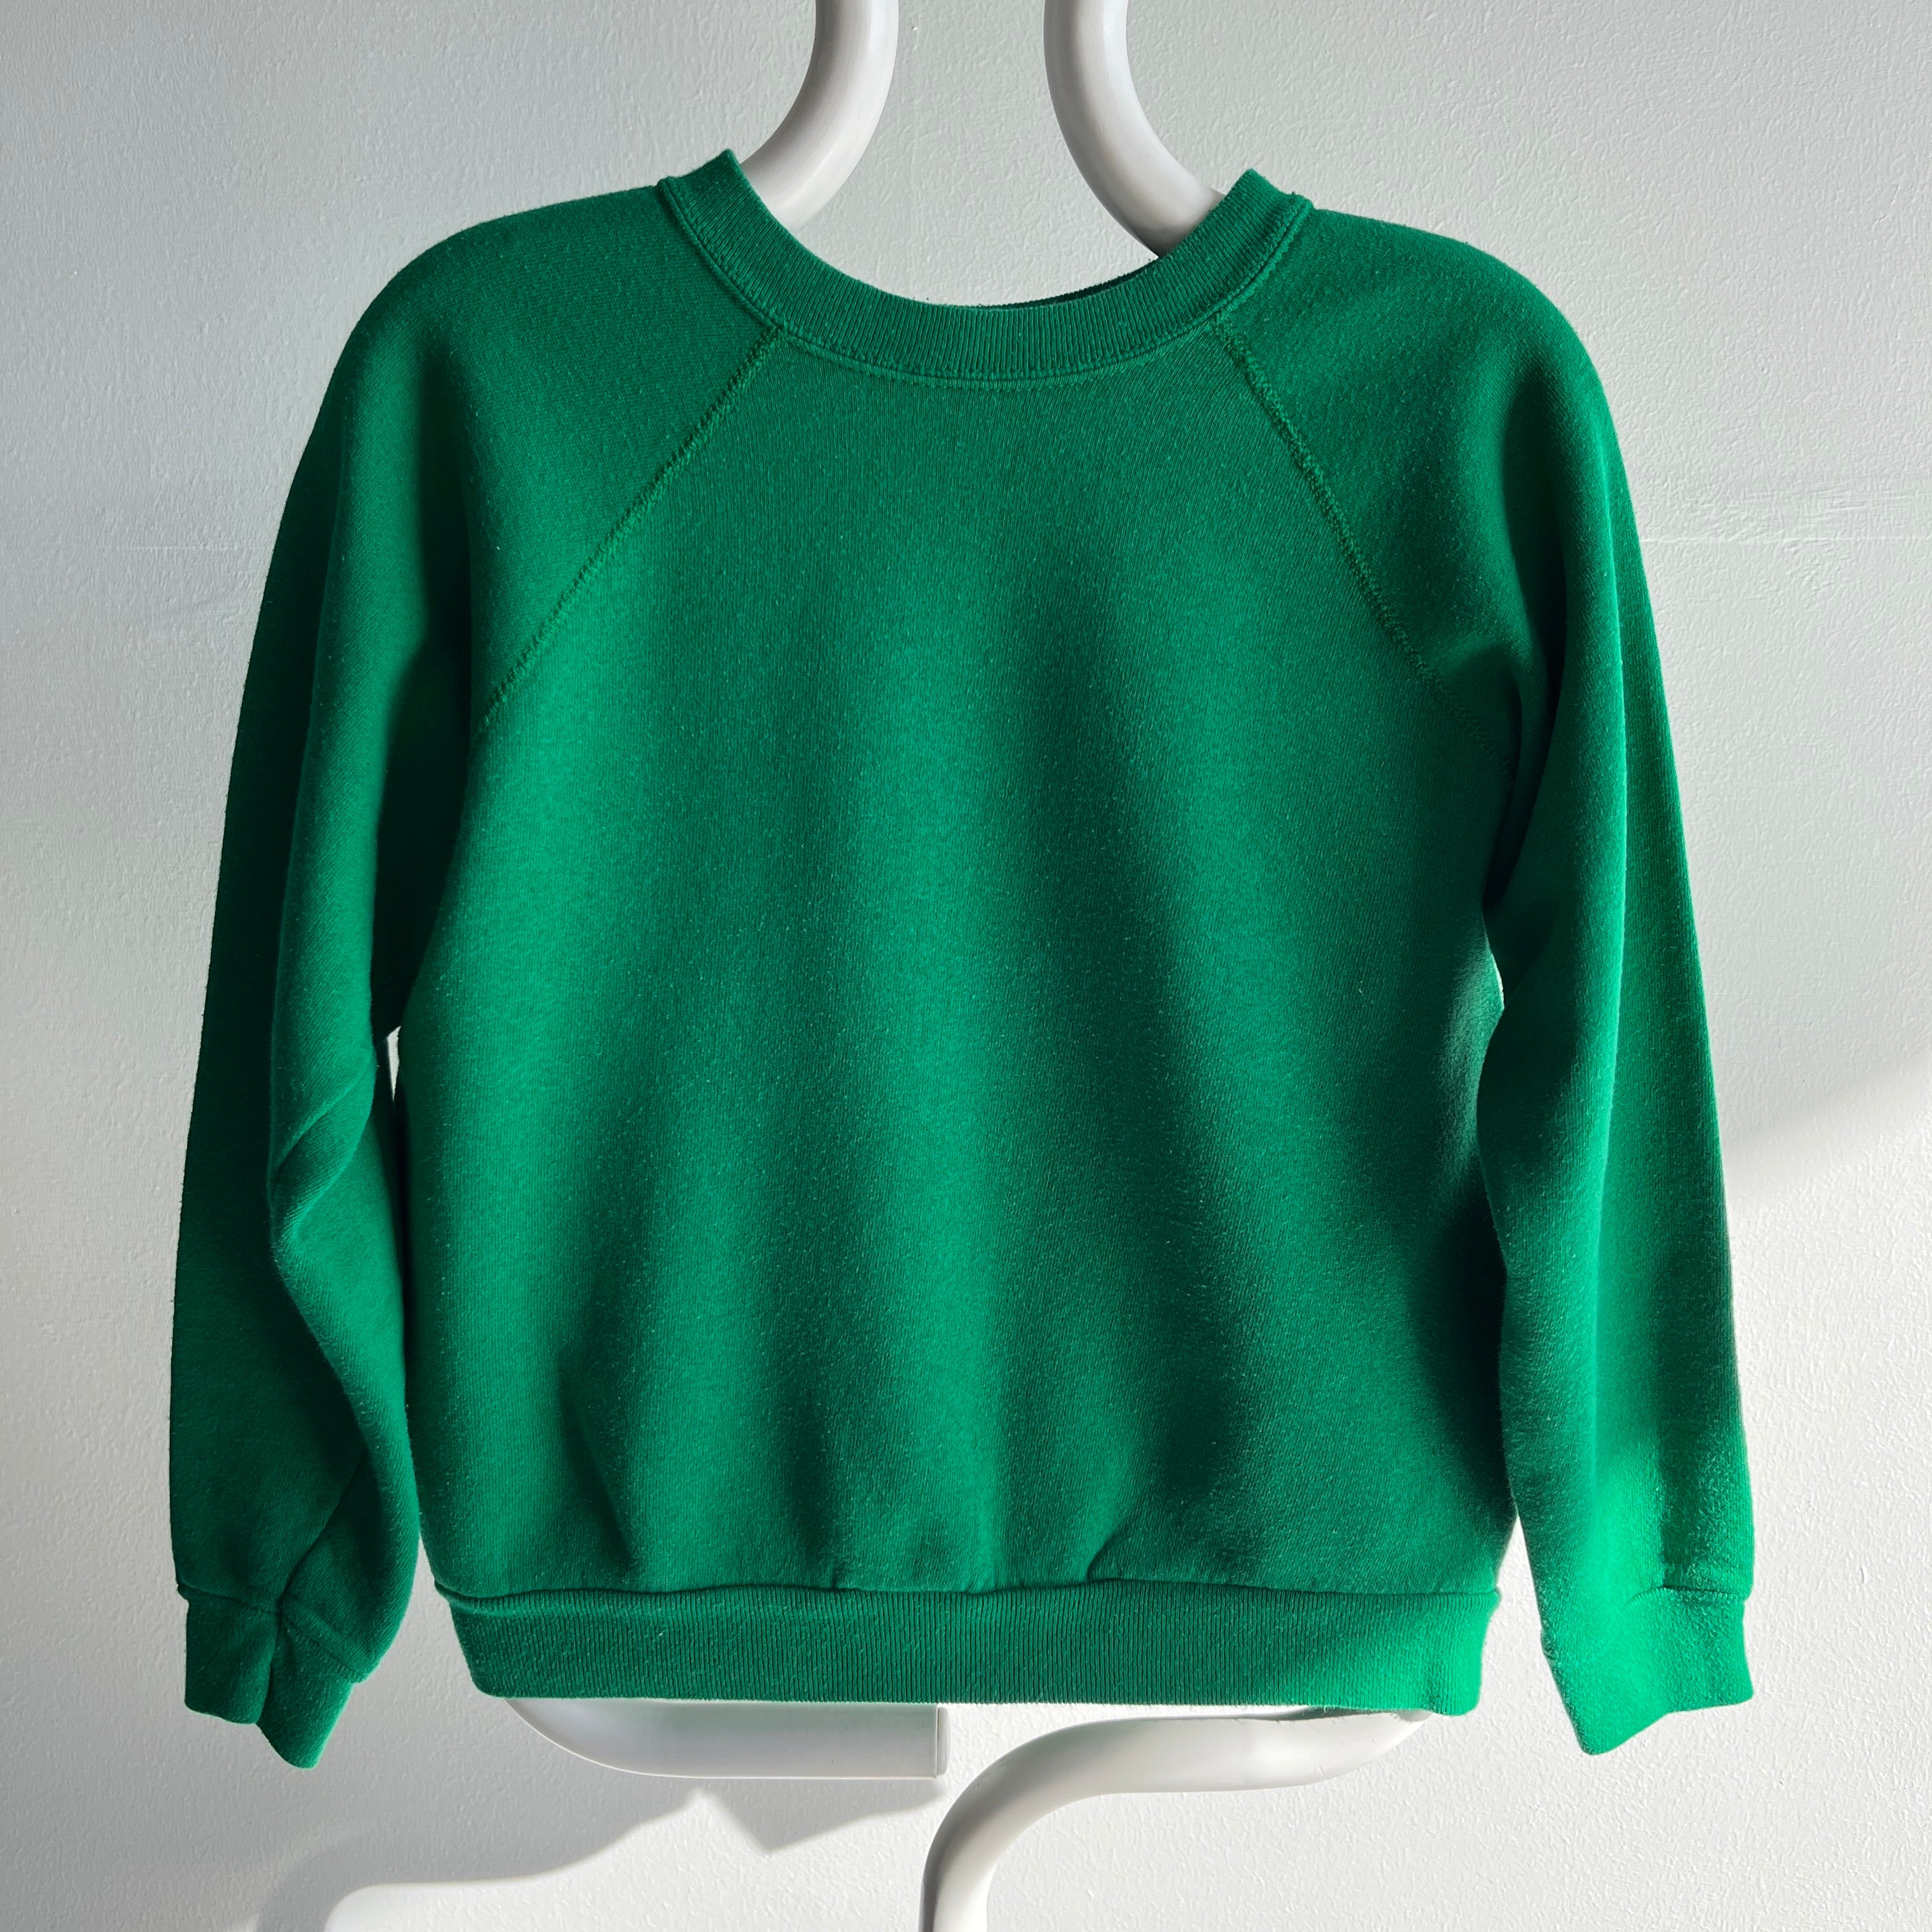 1980s Sweet Smaller Kelly Green Sweatshirt by Tultex